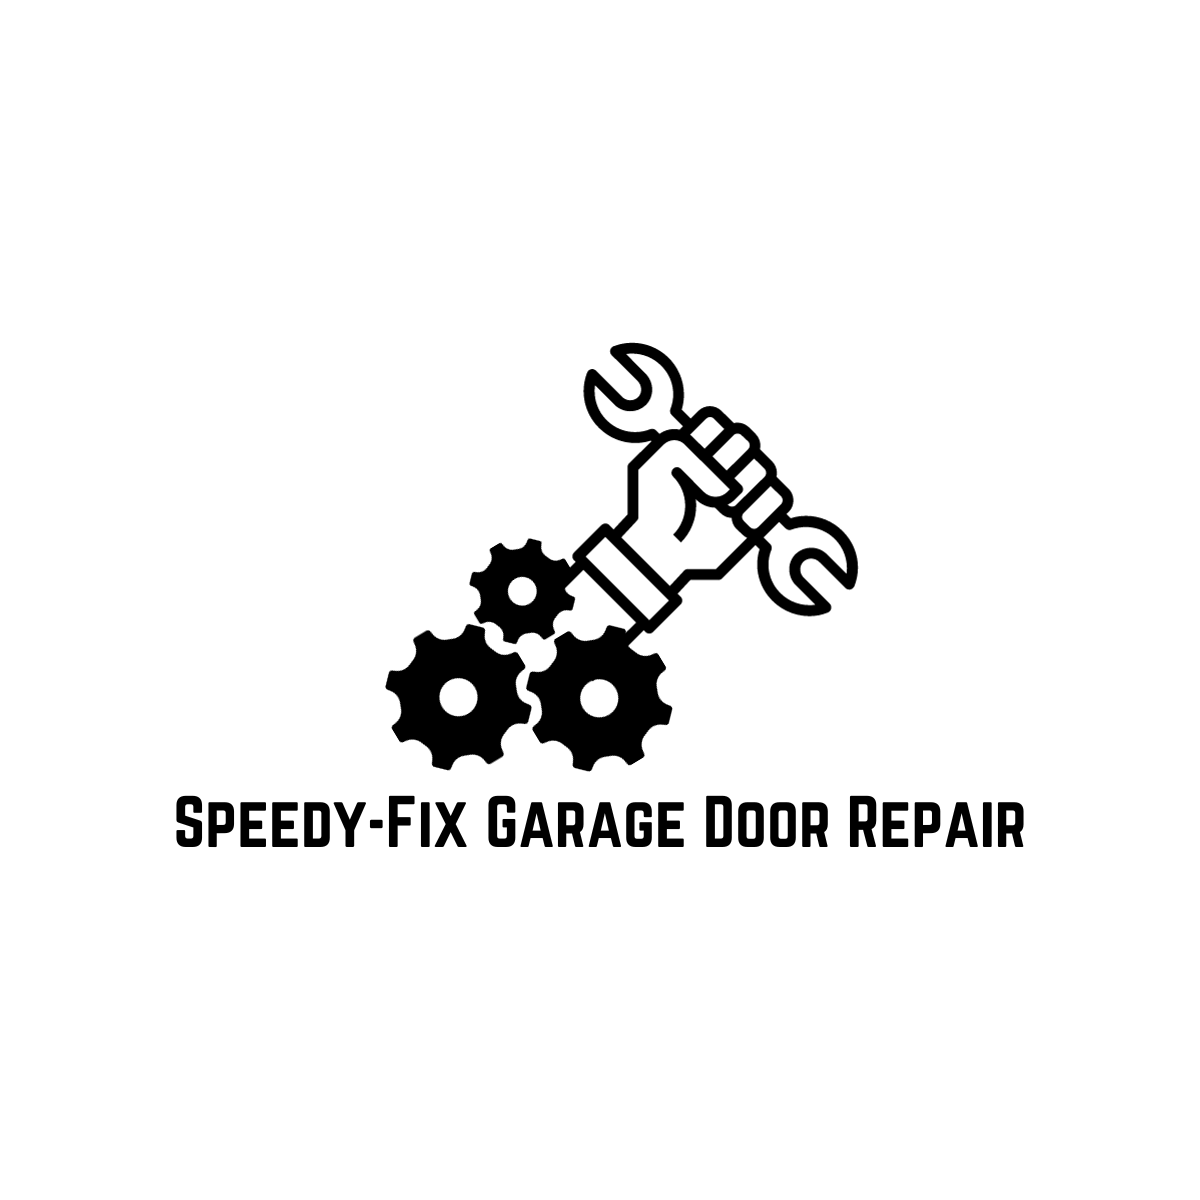 Speedy-Fix Garage Door Repair